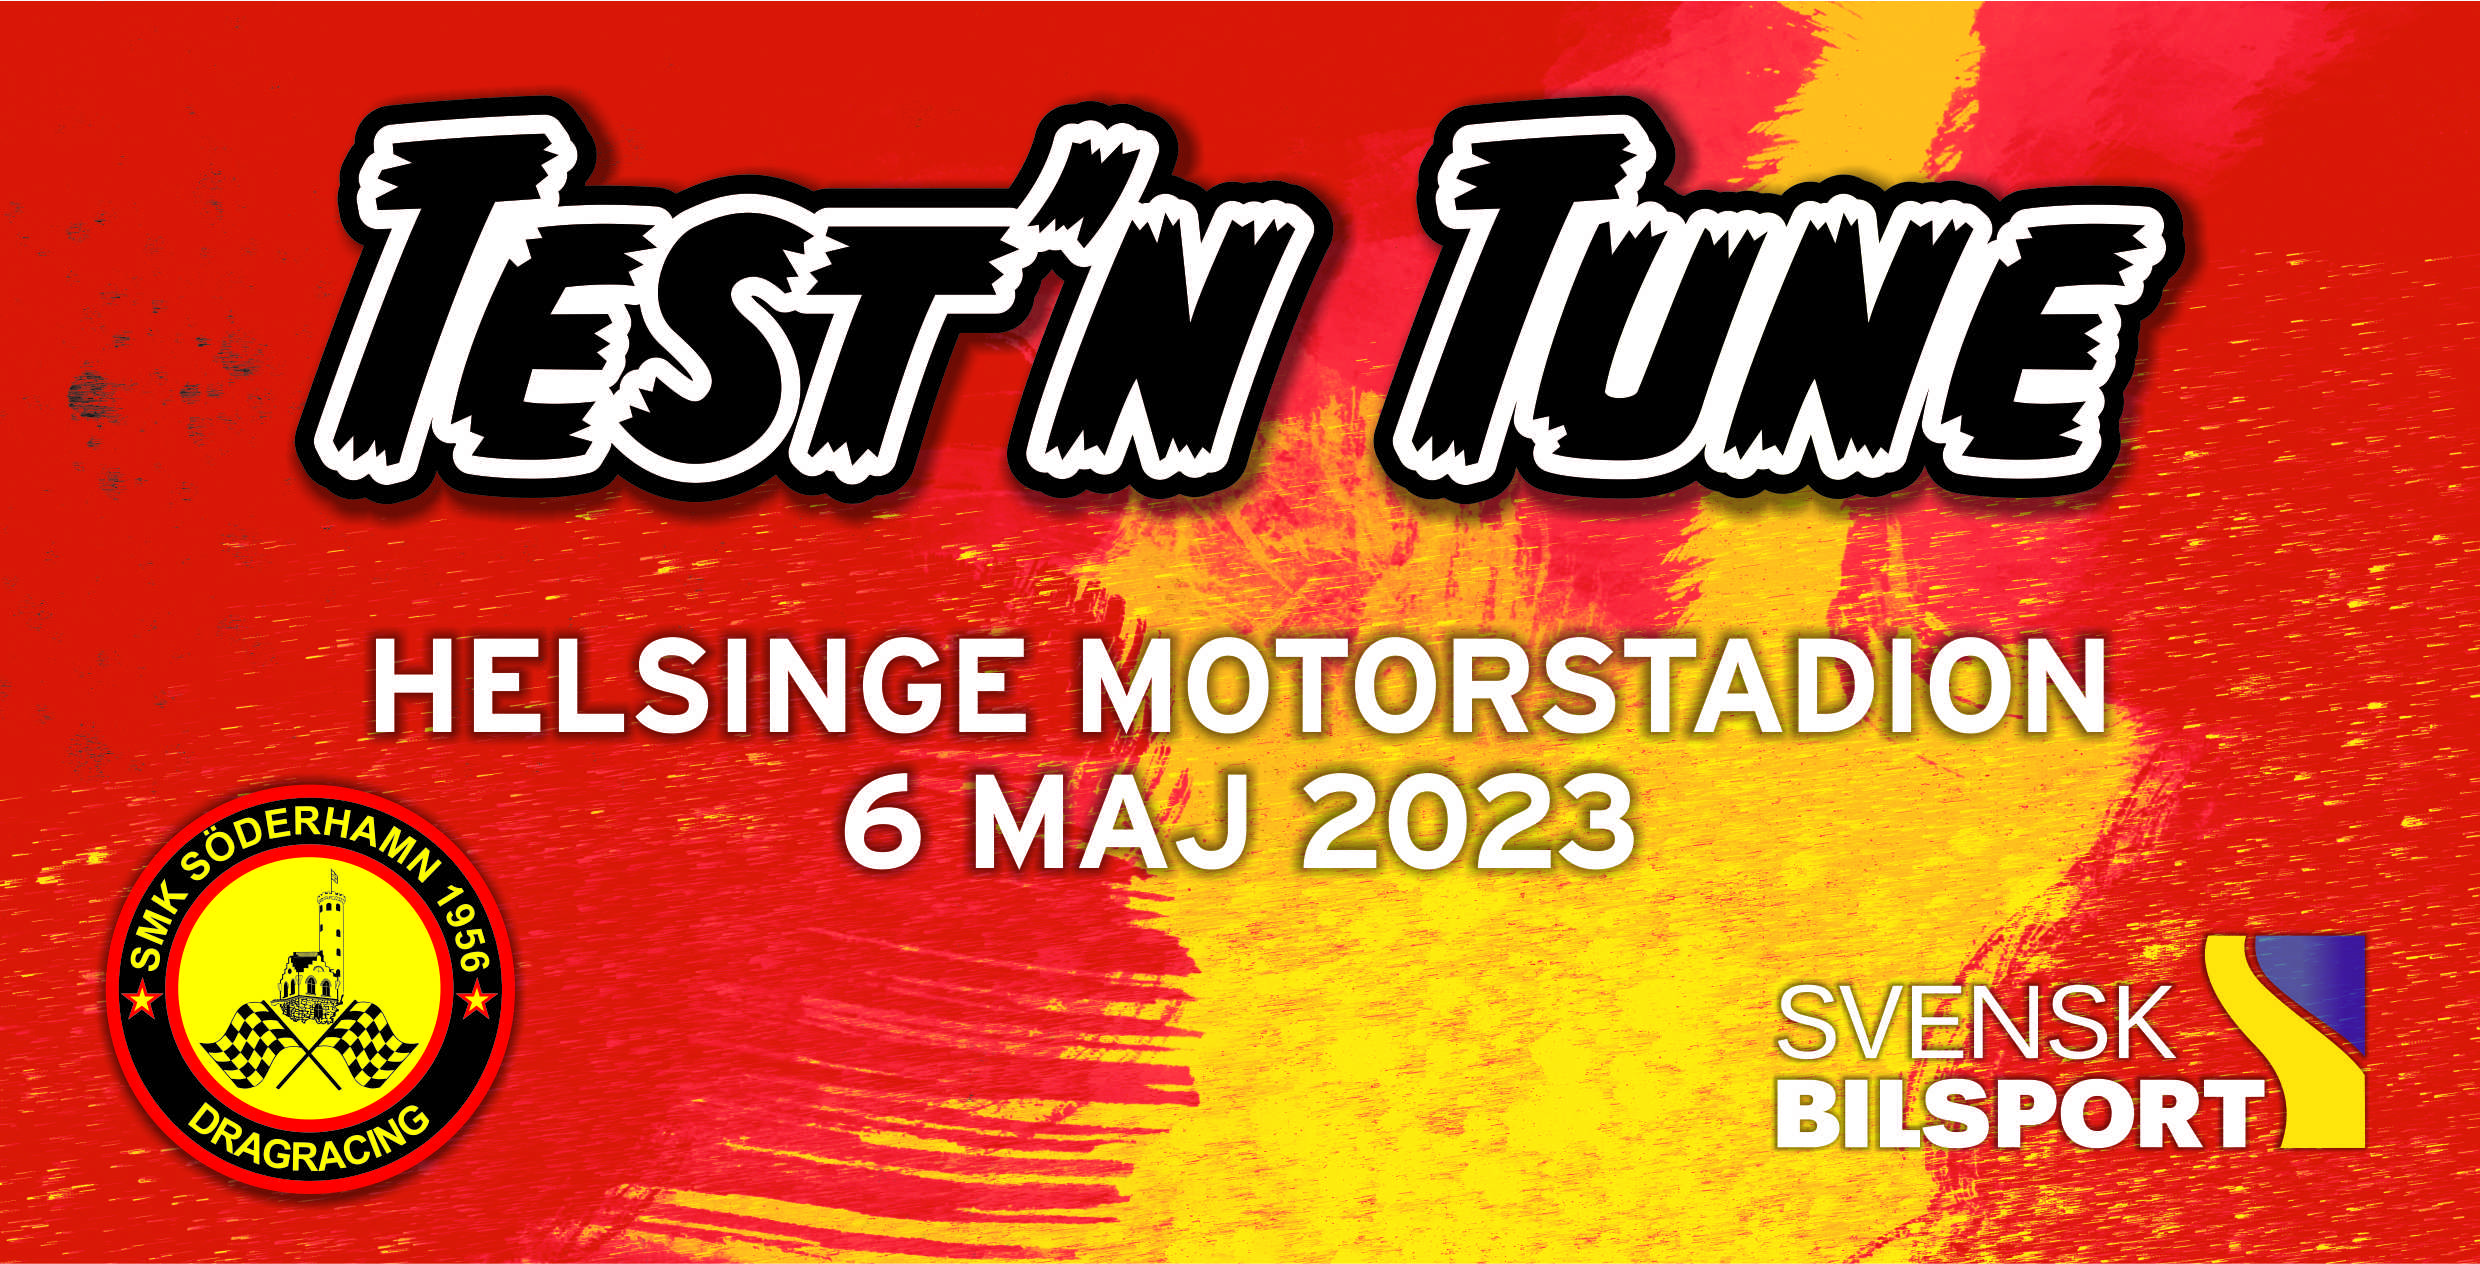 Test & Tune Söderhamn 6 Maj 2023